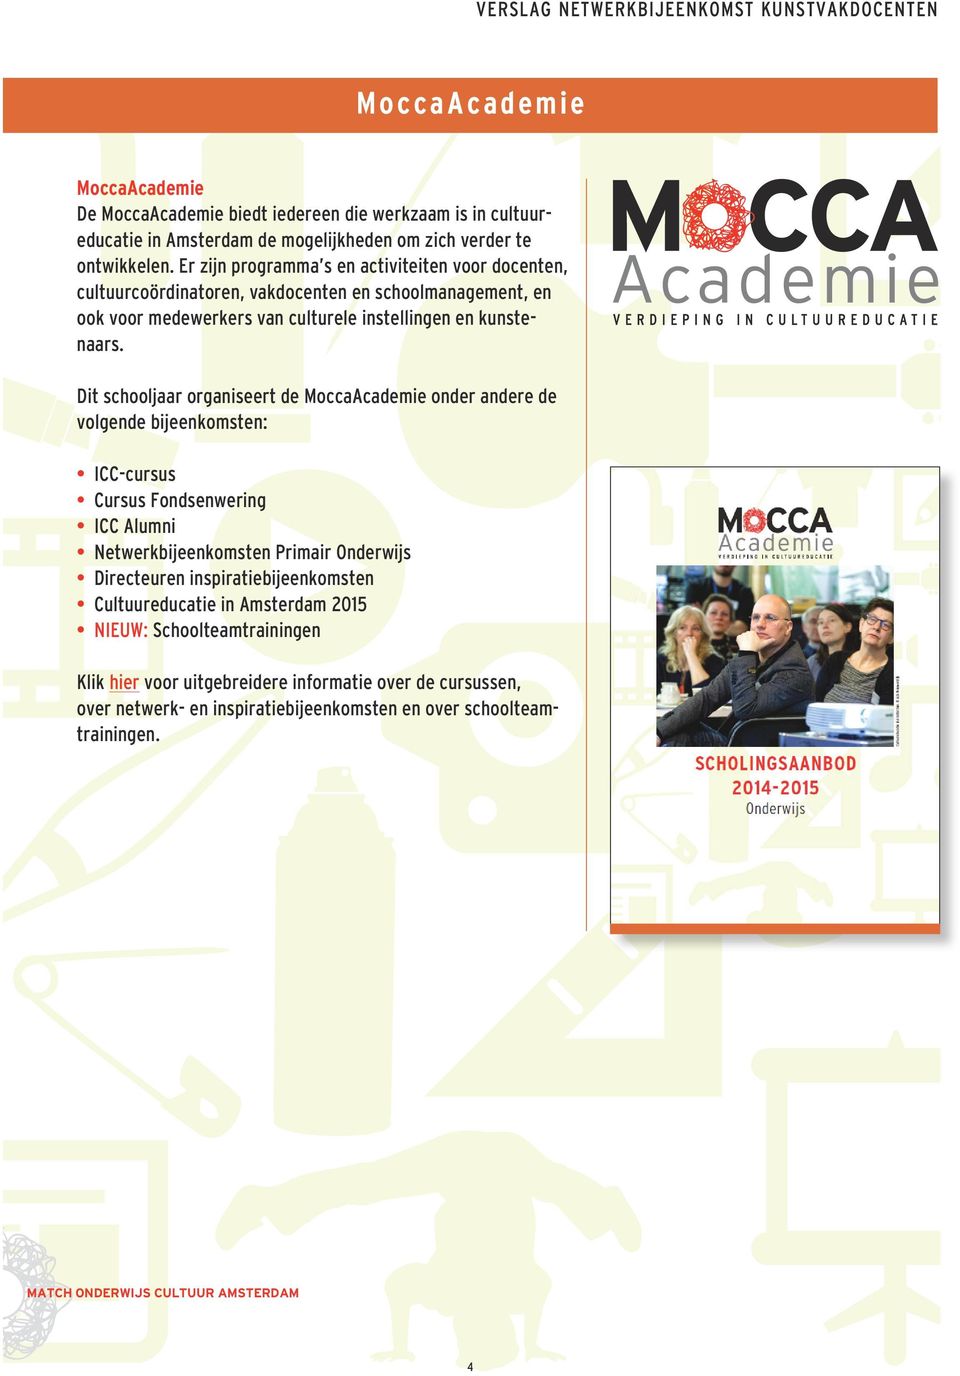 Dit schooljaar organiseert de Mocca Academie onder andere de volgende bijeenkomsten: ICC-cursus Cursus Fondsenwering ICC Alumni Netwerkbijeenkomsten Primair Onderwijs Directeuren